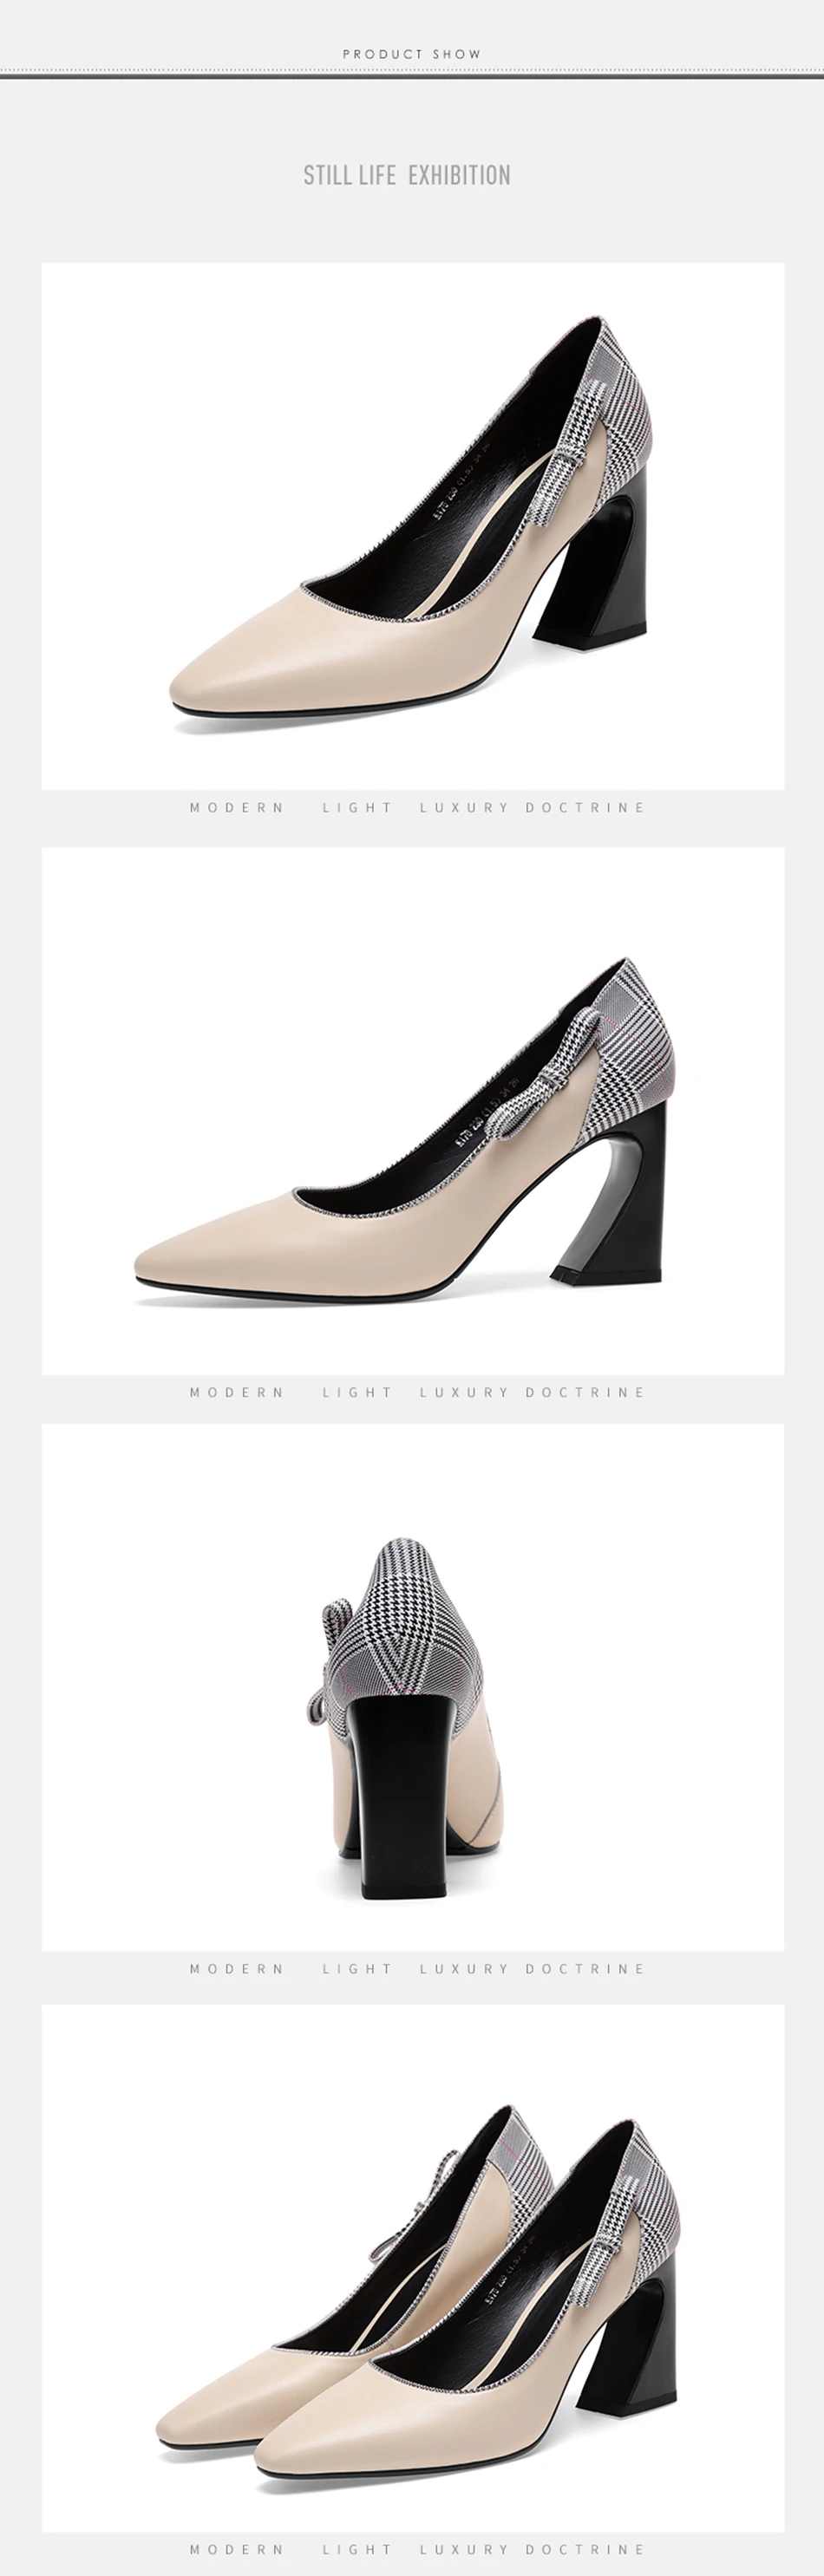 Г., новые осенние женские туфли-лодочки женская кожаная обувь на высоком каблуке 8 см в черно-бежевую клетку